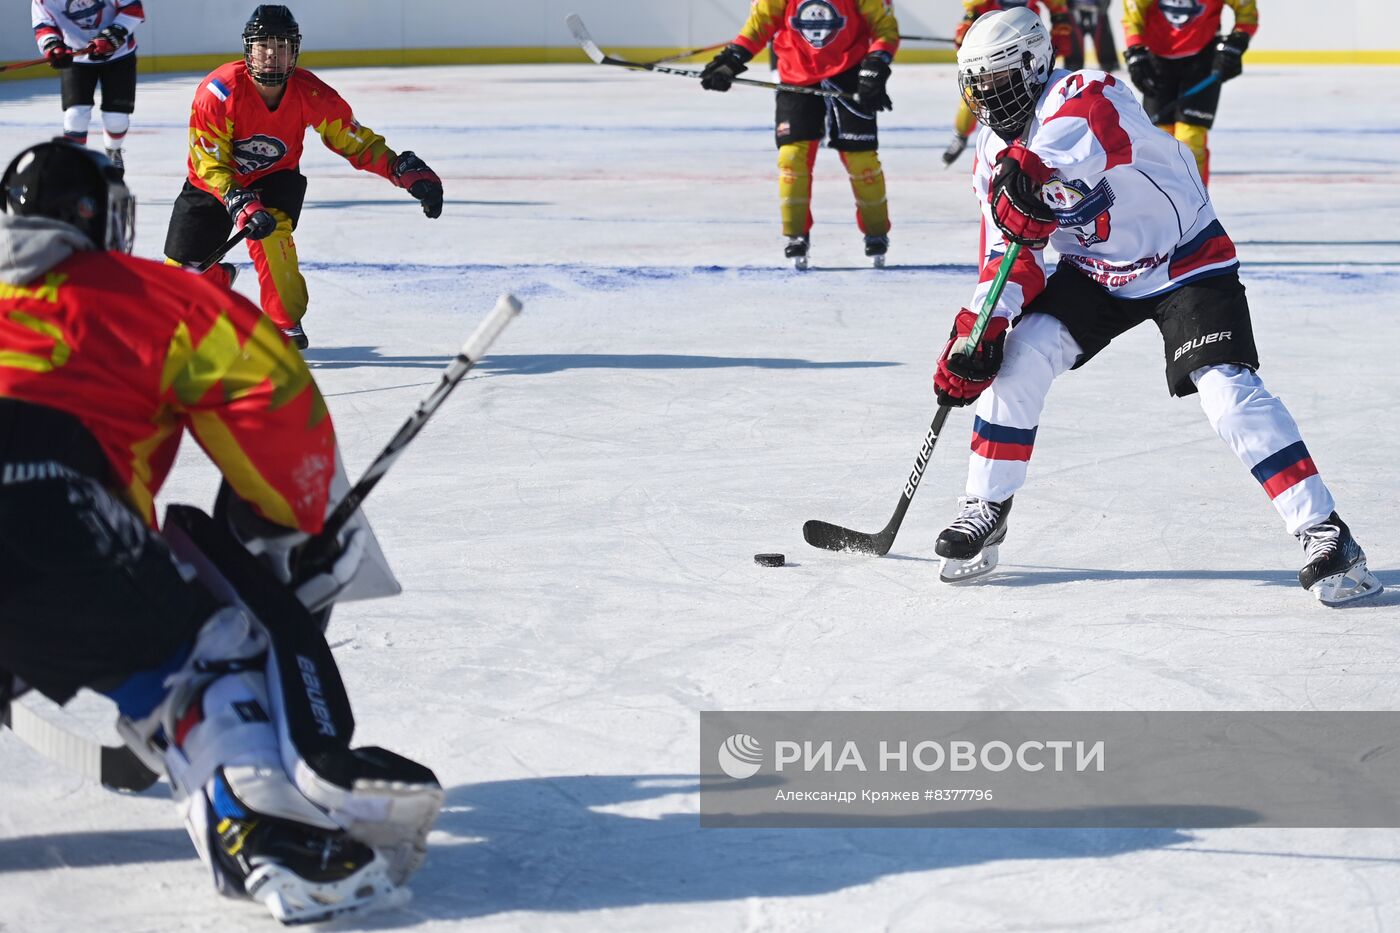 Открытие российско-китайского фестиваля зимних видов спорта. Хоккей на льду Амура